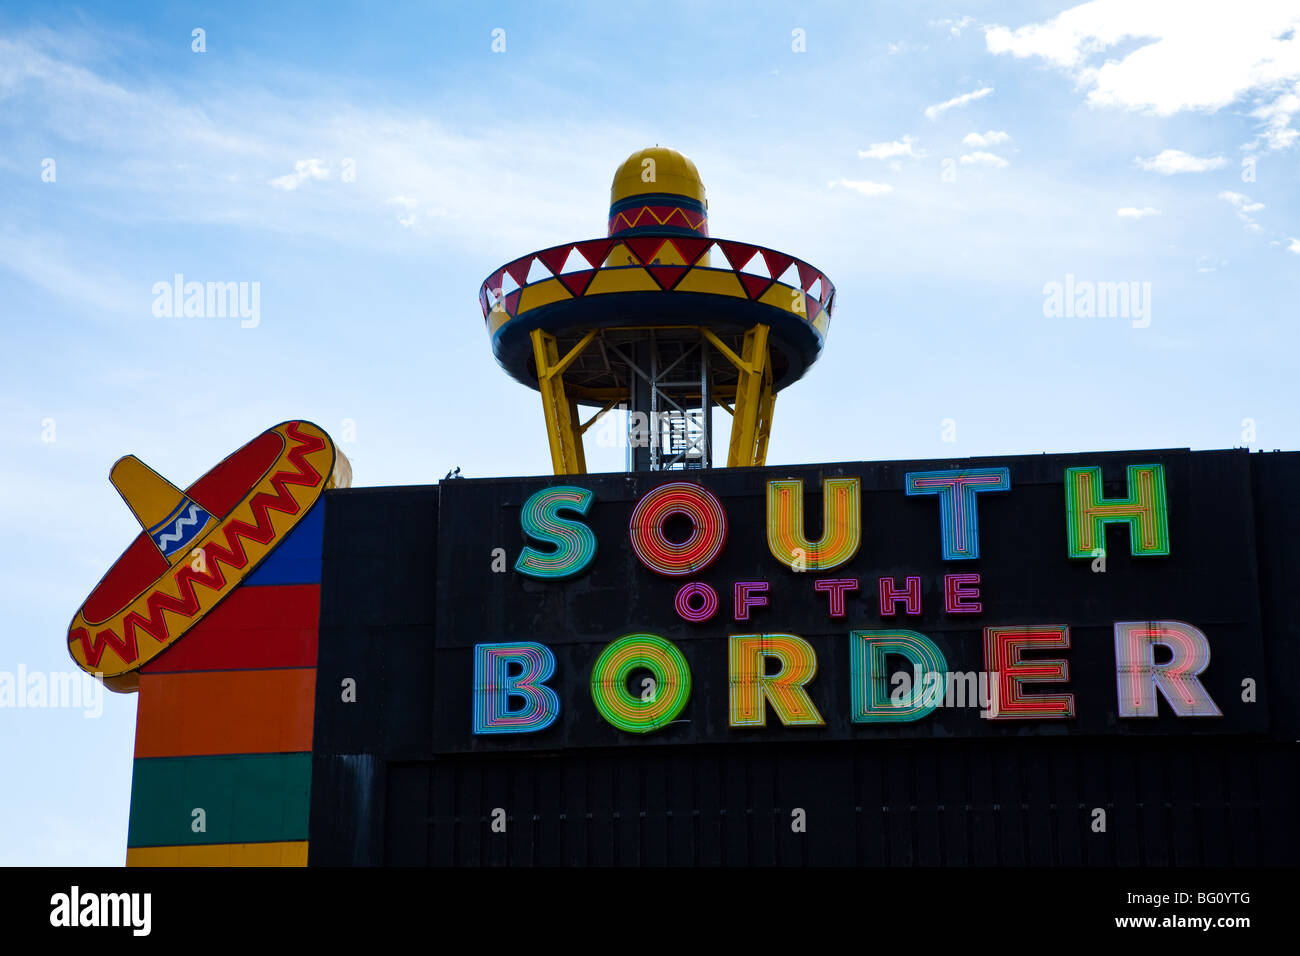 Célèbre attraction touristique au sud de la frontière le long de la I-95 sur la frontière de la Caroline du Sud. Banque D'Images